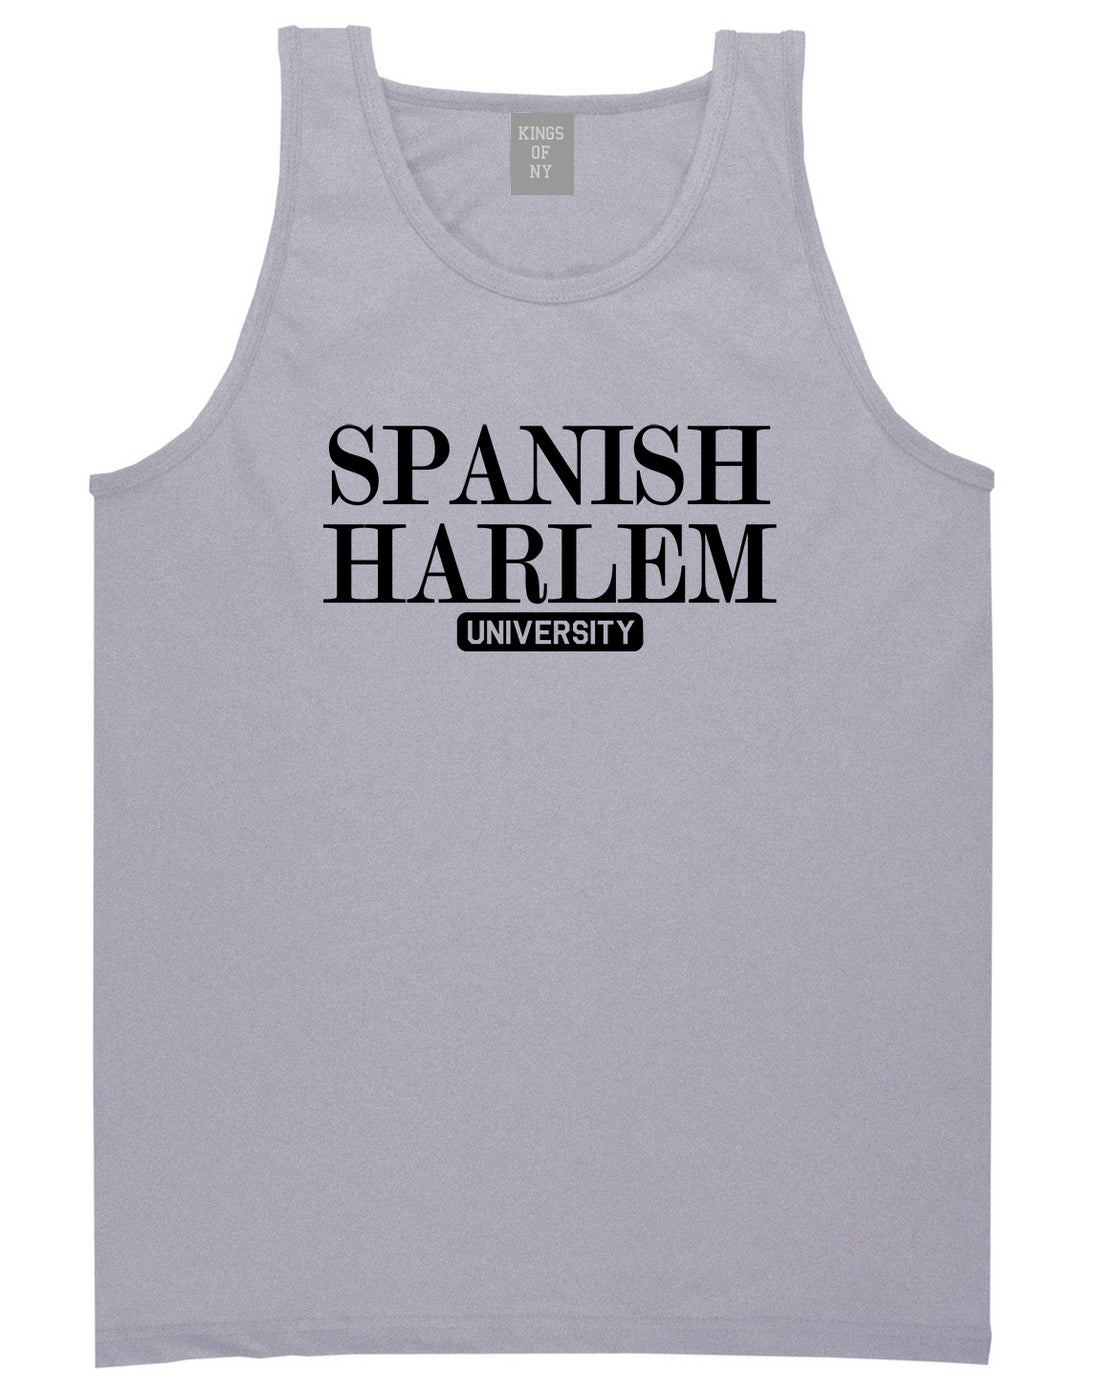 Spanish Harlem University New York Mens Tank Top T-Shirt Grey